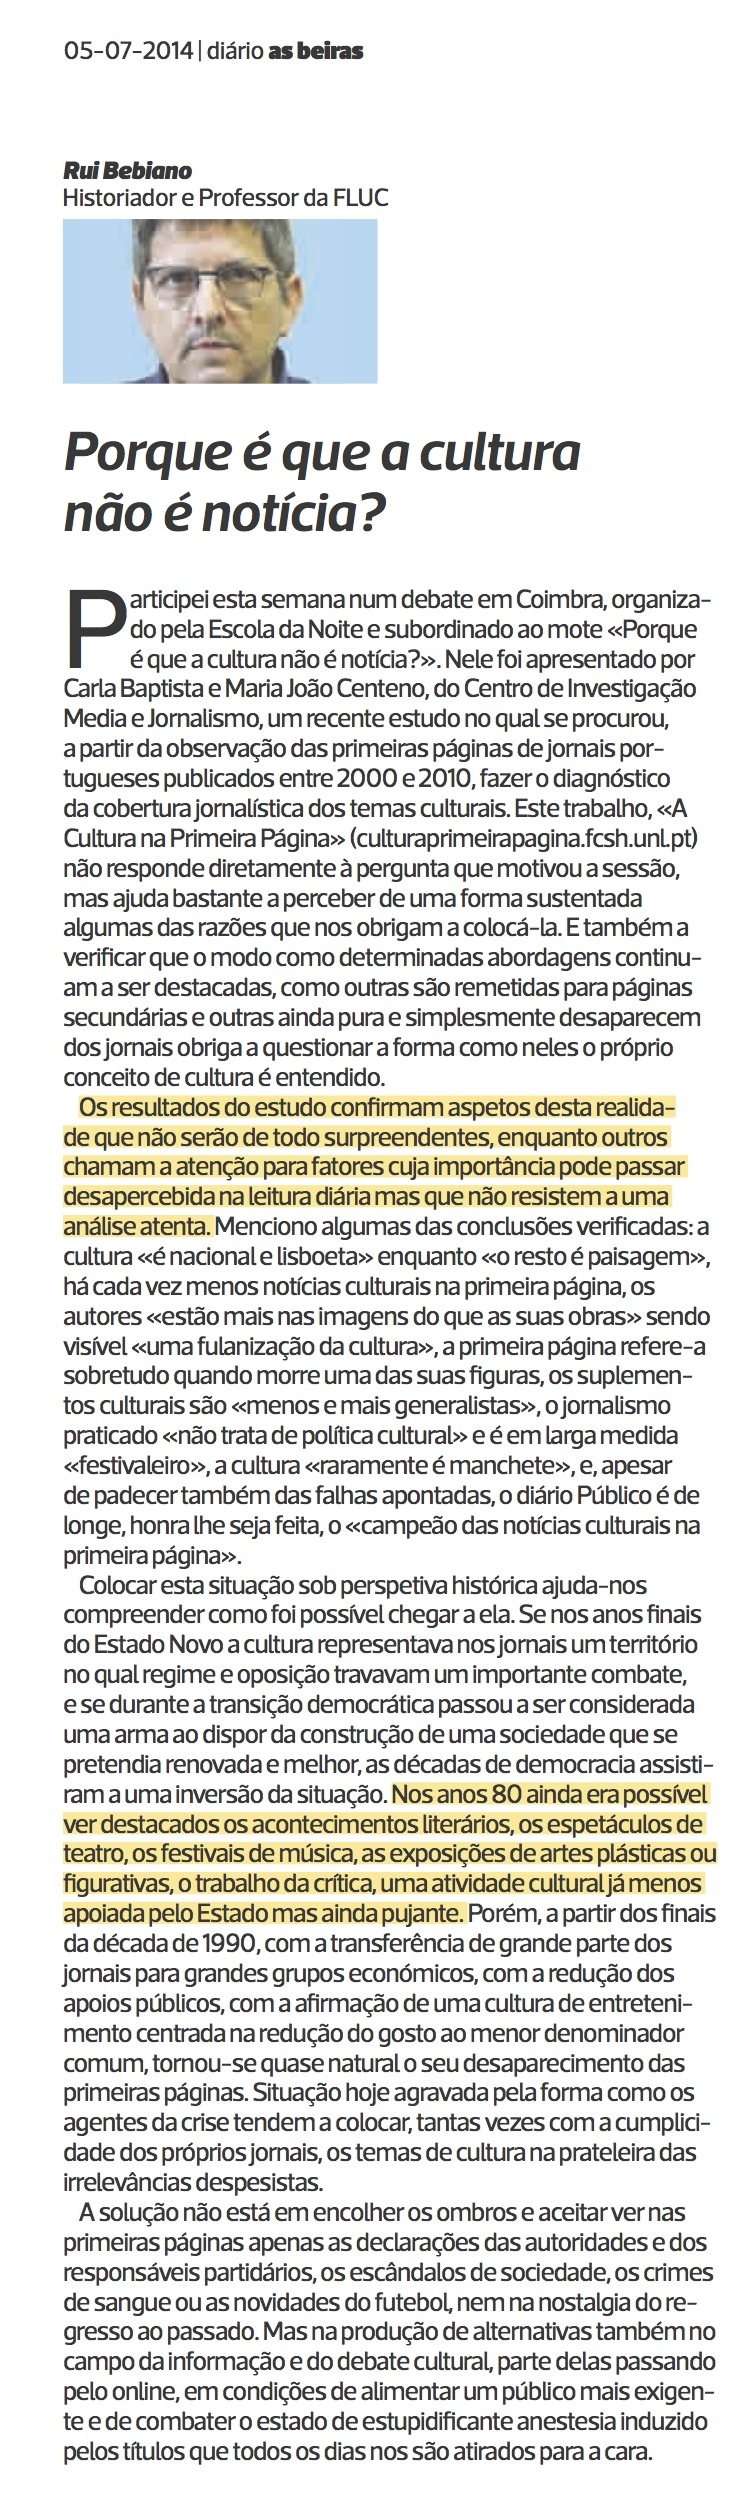 Diário As Beiras, 05/07/2014 (clique para aumentar)